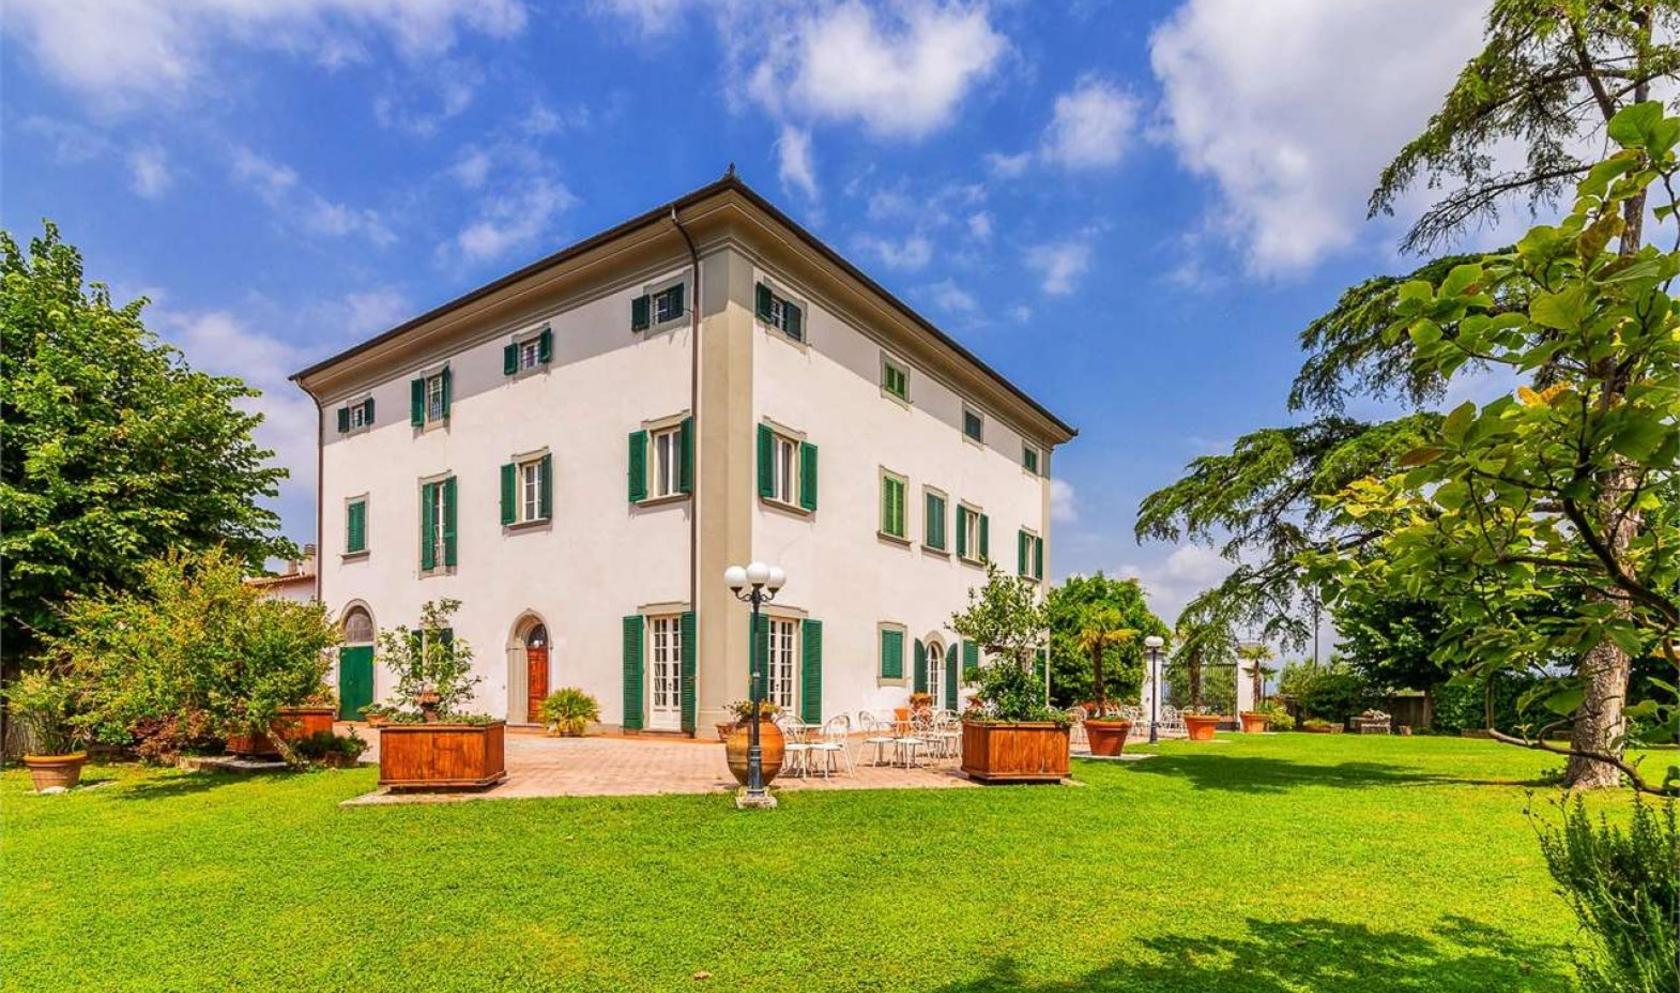 Toscana Immobiliare - Villa neoclassica con parco in vendita vicino Firenze